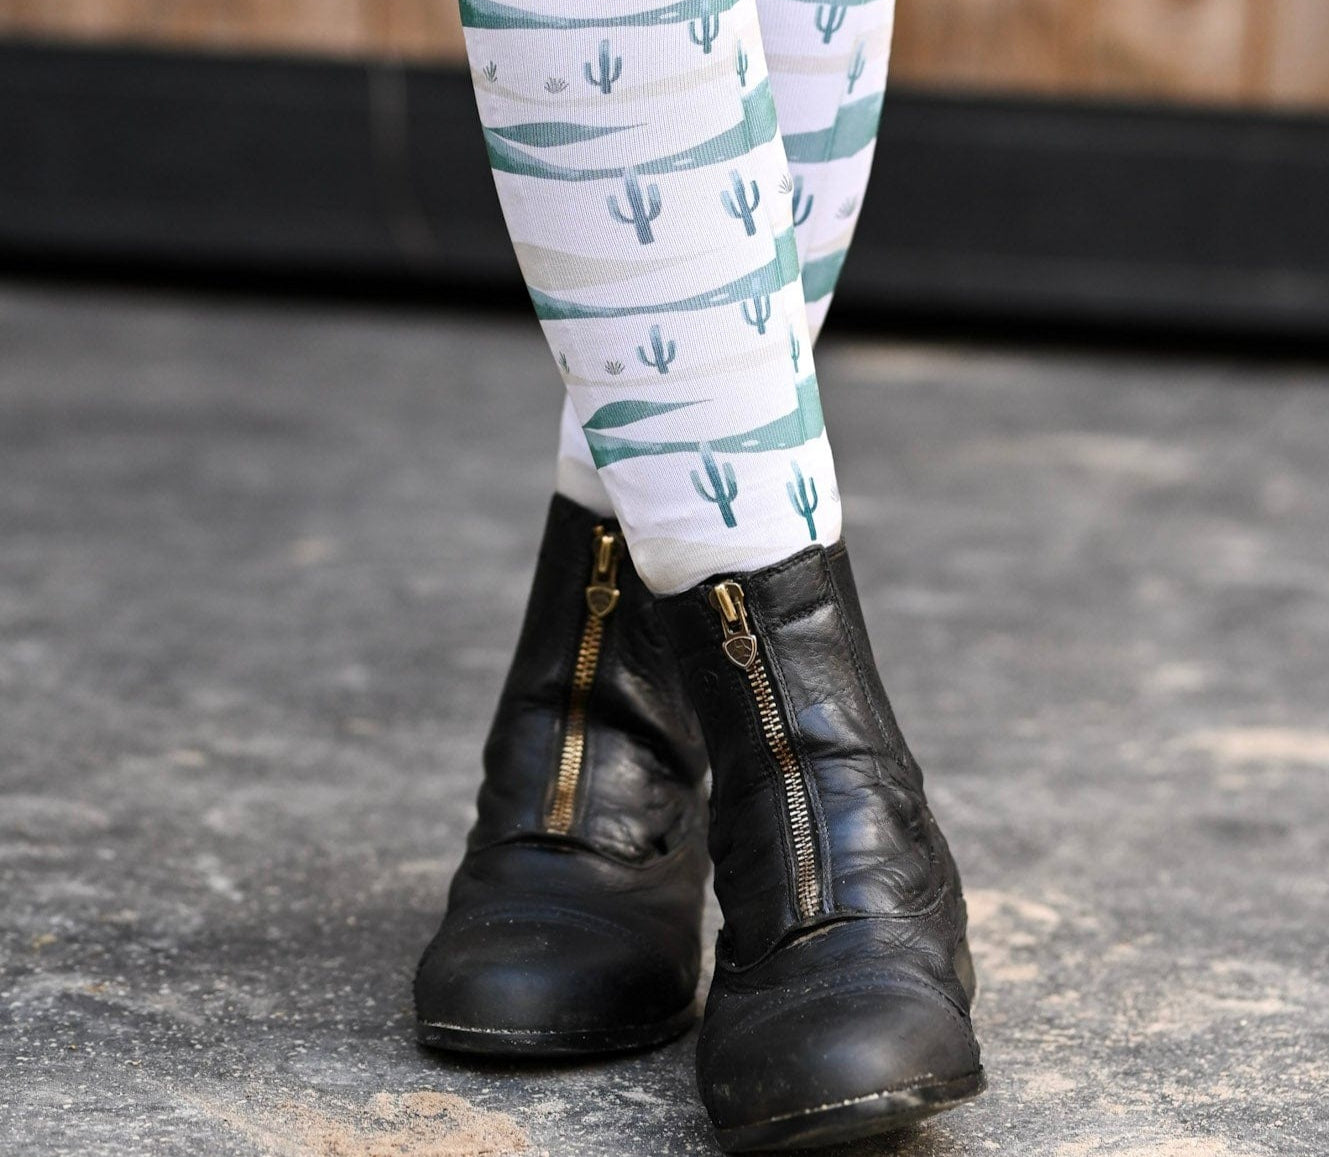 D&S LIMITED EDITION Limited Edition Limited New Mexico Socks equestrian boot socks boot socks thin socks riding socks pattern socks tall socks funny socks knee high socks horse socks horse show socks